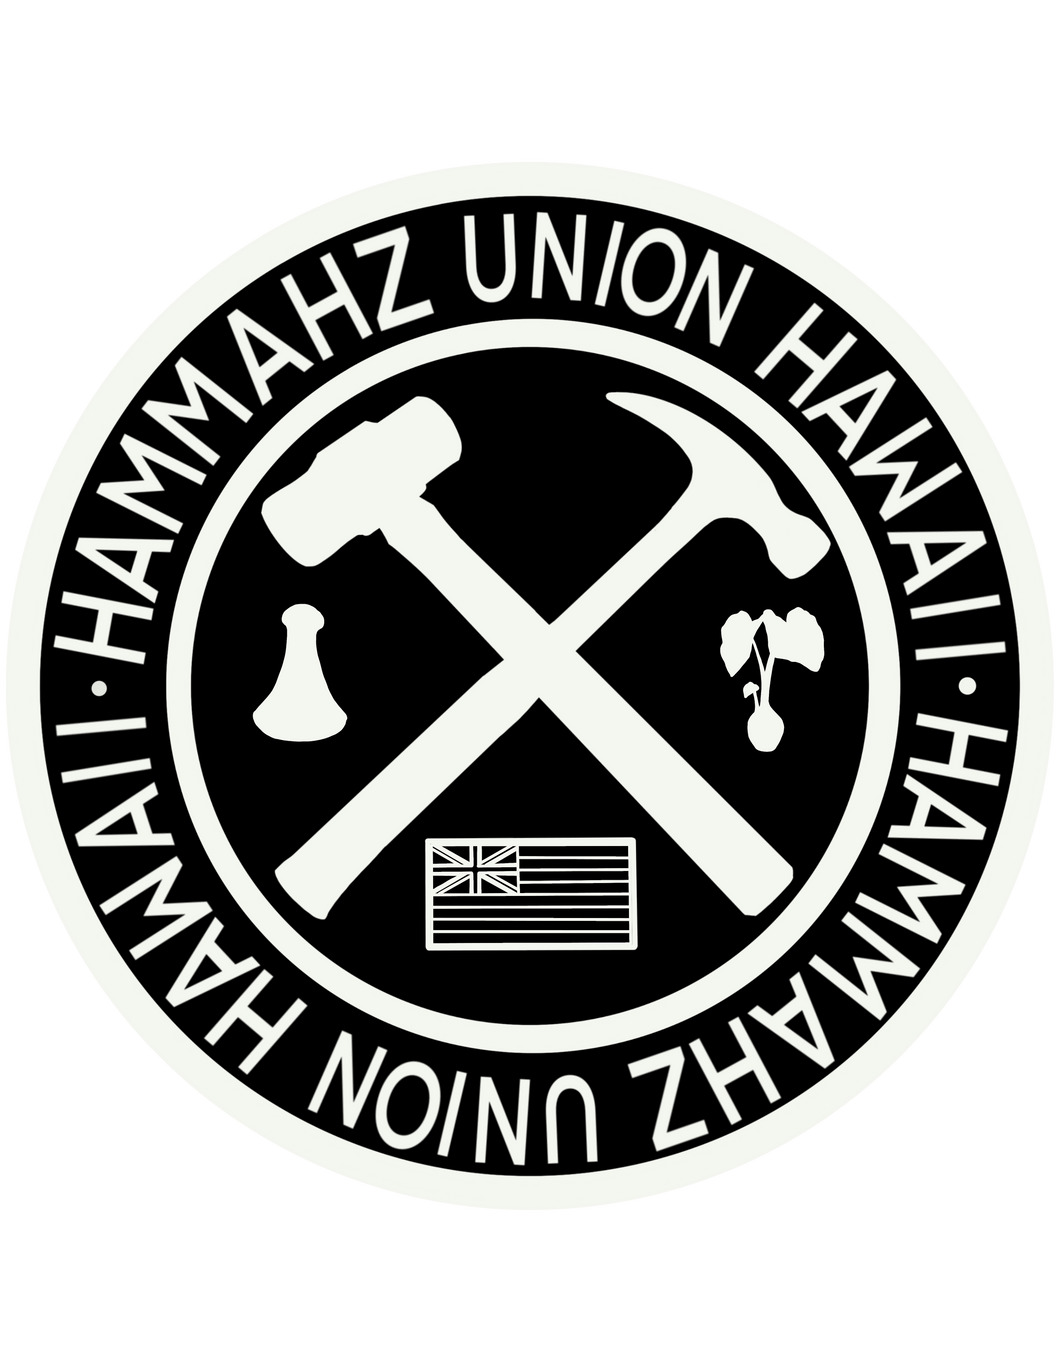 Hammahz Union Sticker